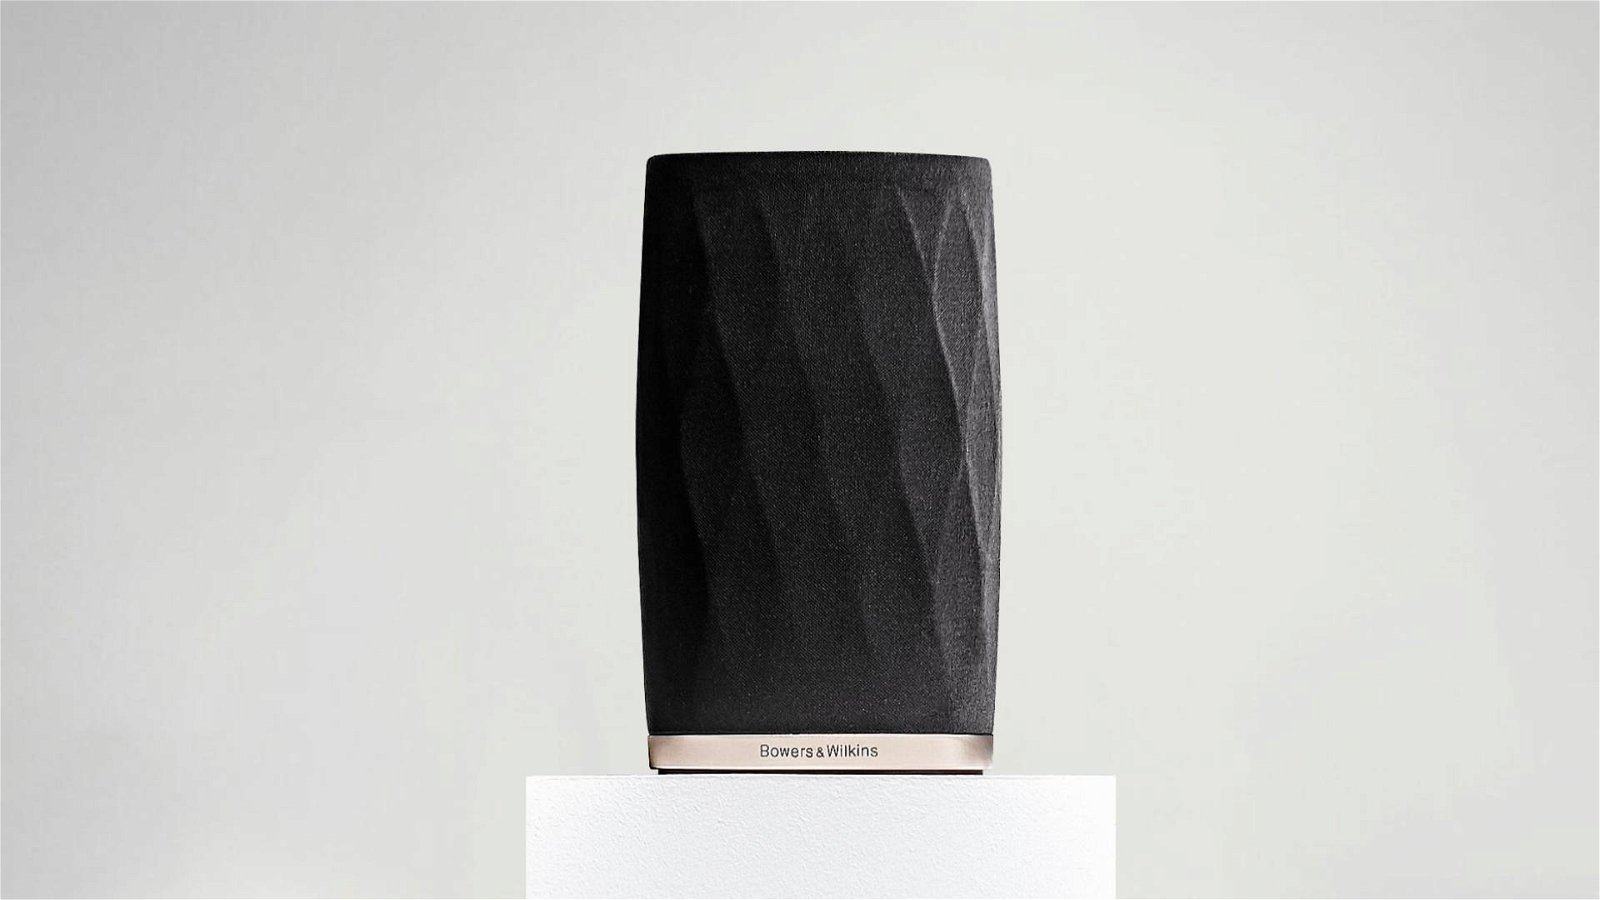 Immagine di B&amp;W Formation Flex, smart speaker wireless per chi ama l'alta risoluzione